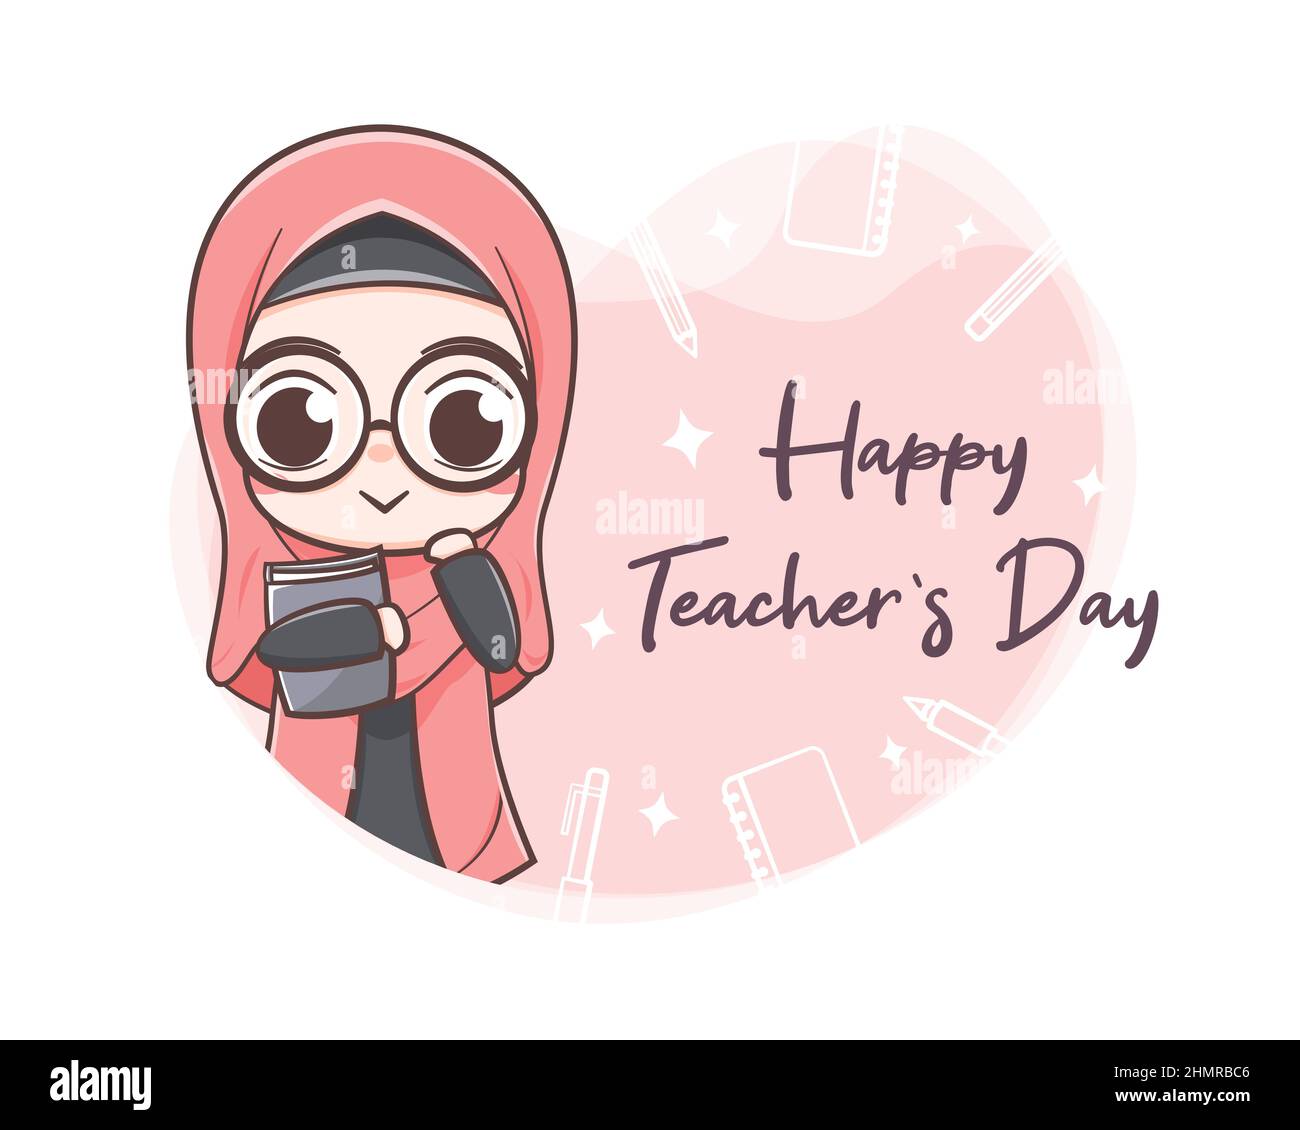 World teachers' day cartoon illustration Stock Vector Image & Art - Alamy